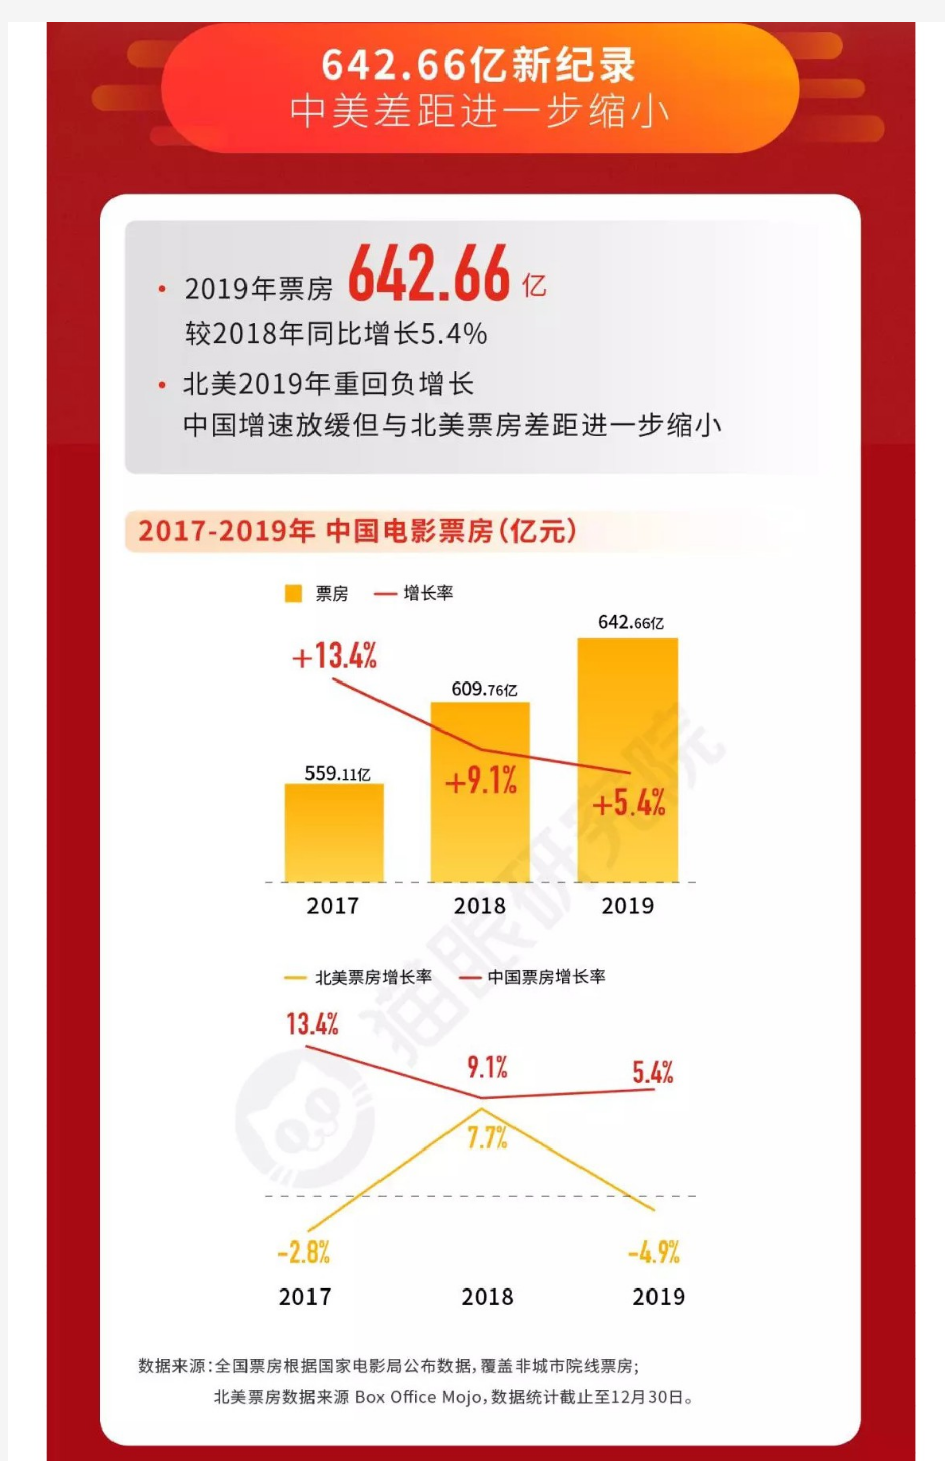 【精品报告】2019中国电影市场数据洞察-猫眼娱乐